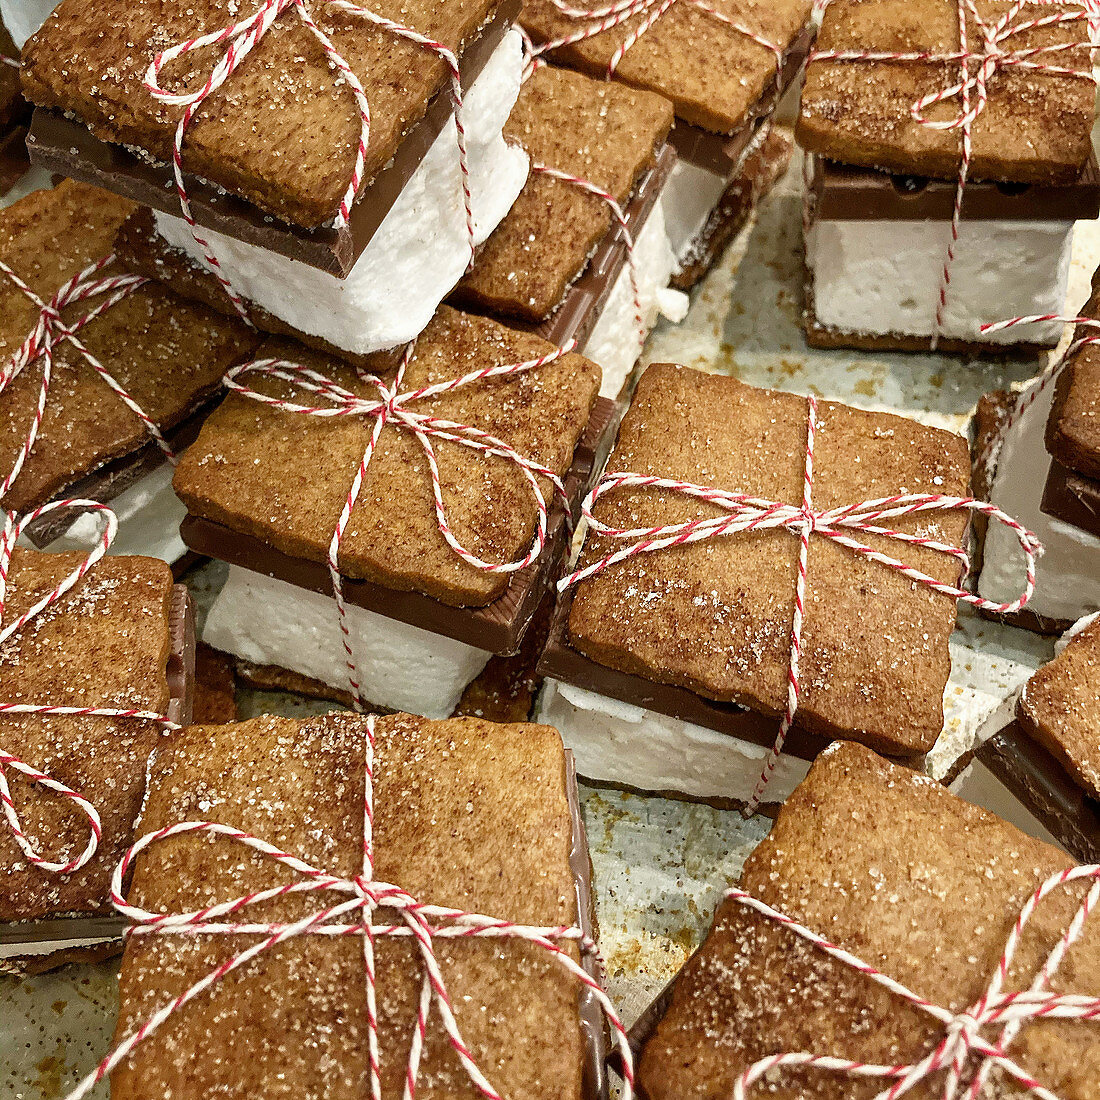 S'mores mit Marshmallows, Graham Cracker und Schokolade, mit Schnur zusammengebunden